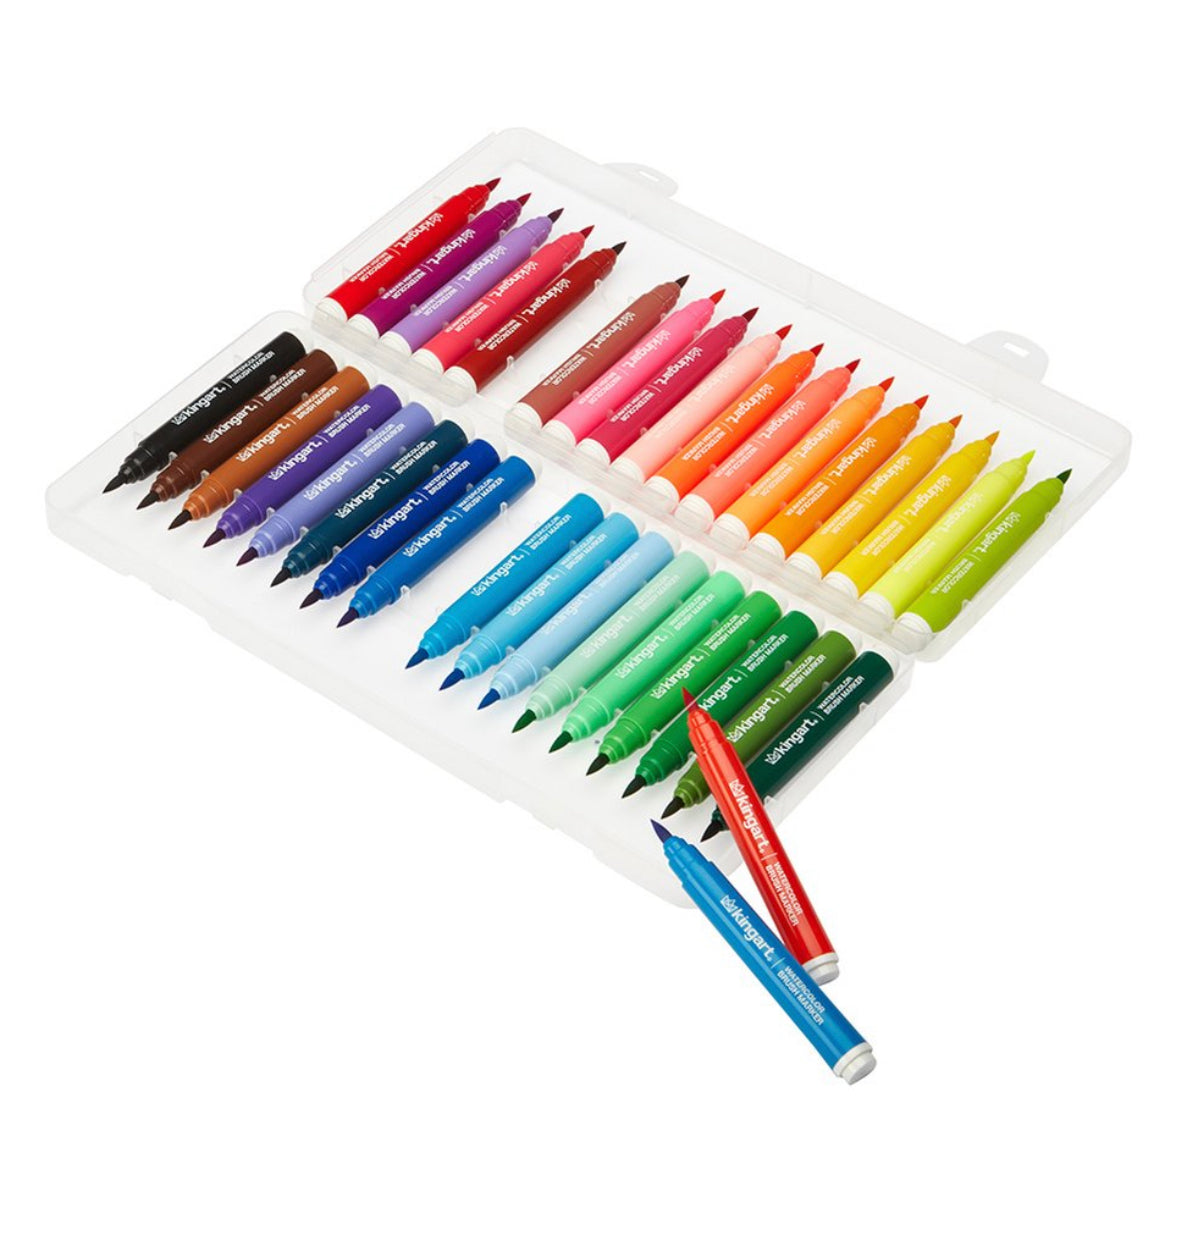 Kingart Watercolor Brush Marker Set 12/Pkg